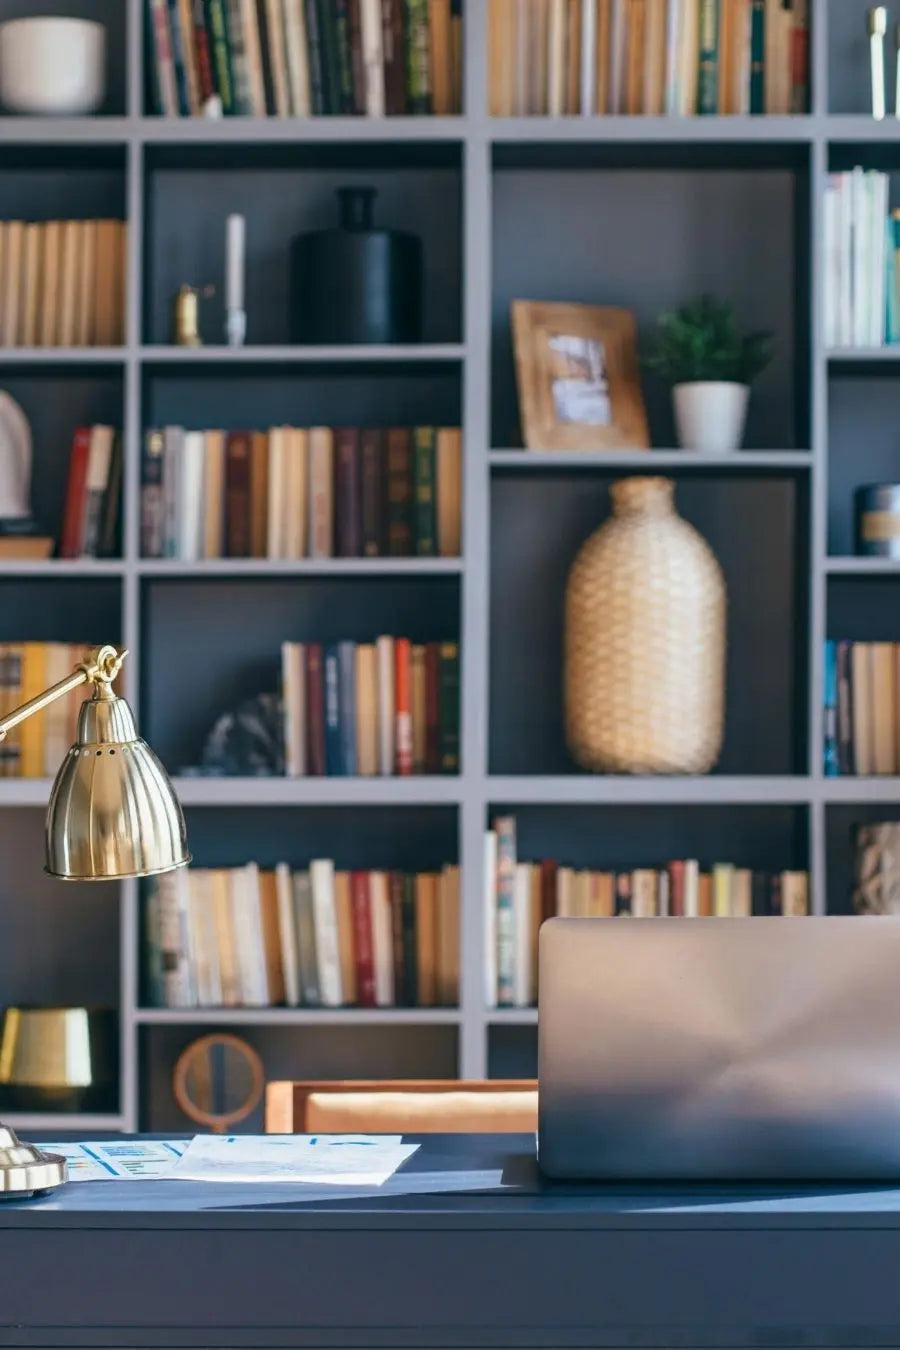 Tips for Organizing Your Bookshelves